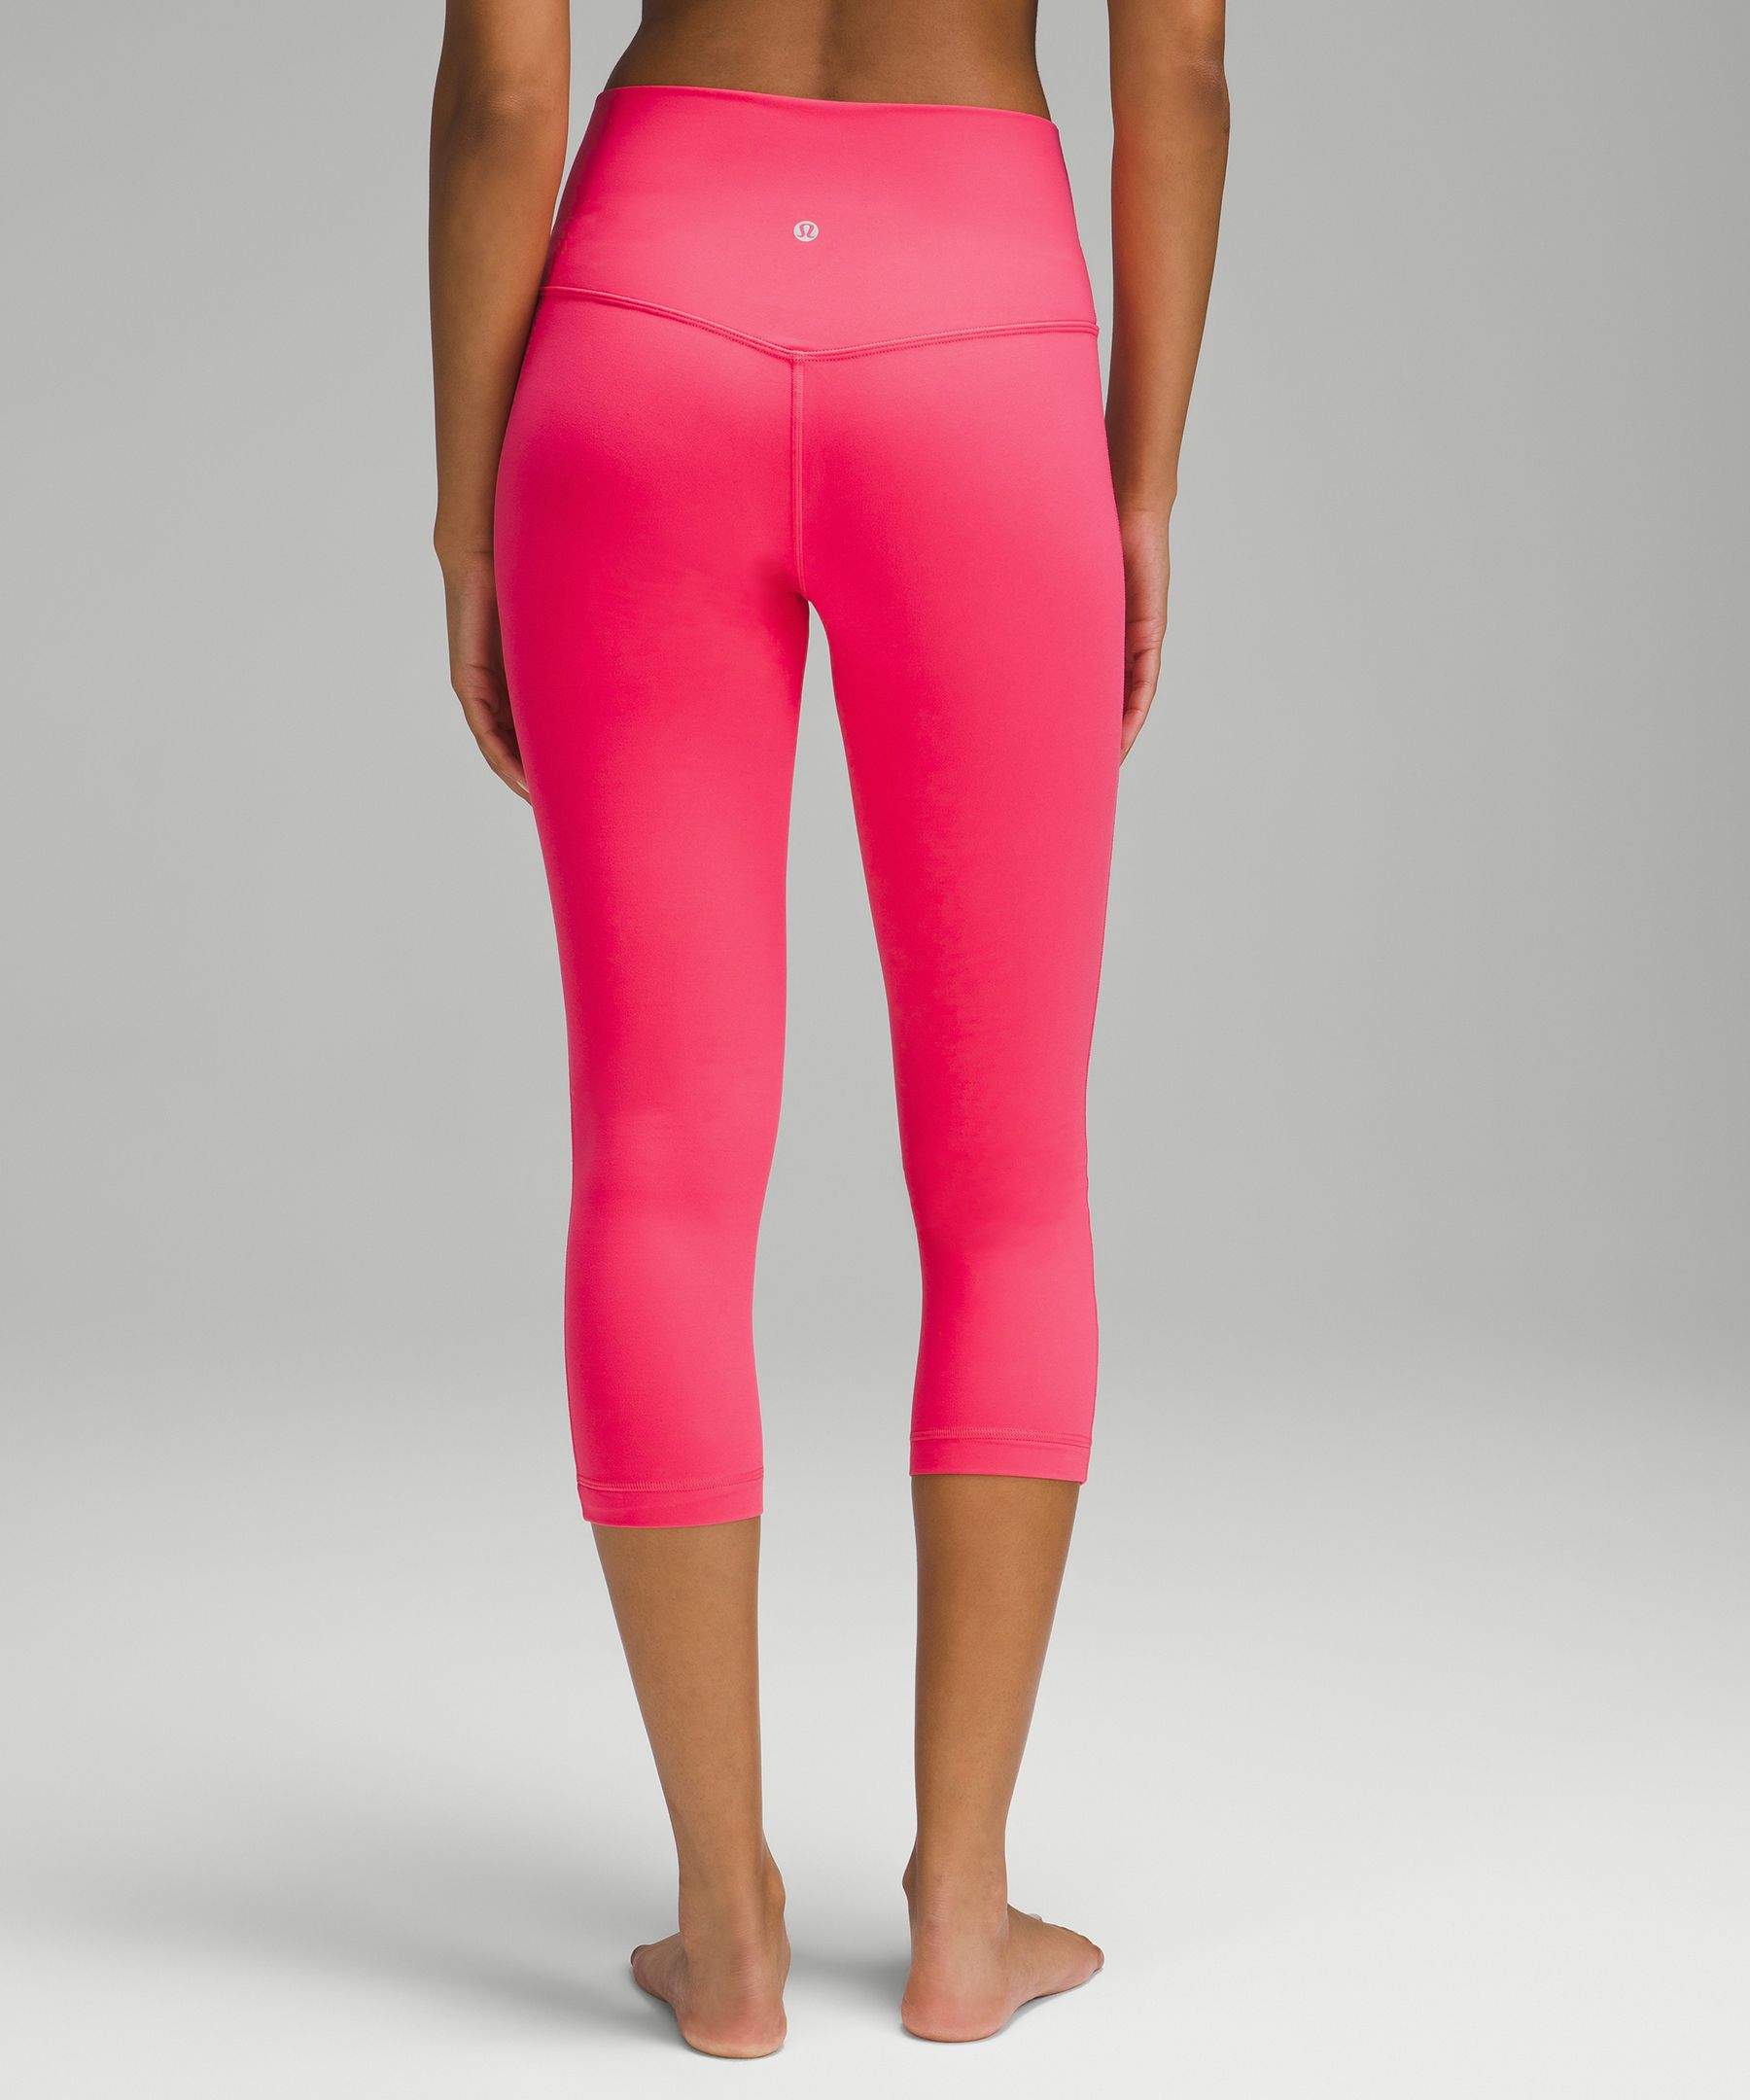 NWT Lululemon Align HR Crop 21” pink camo leggings. Very CUTE! No